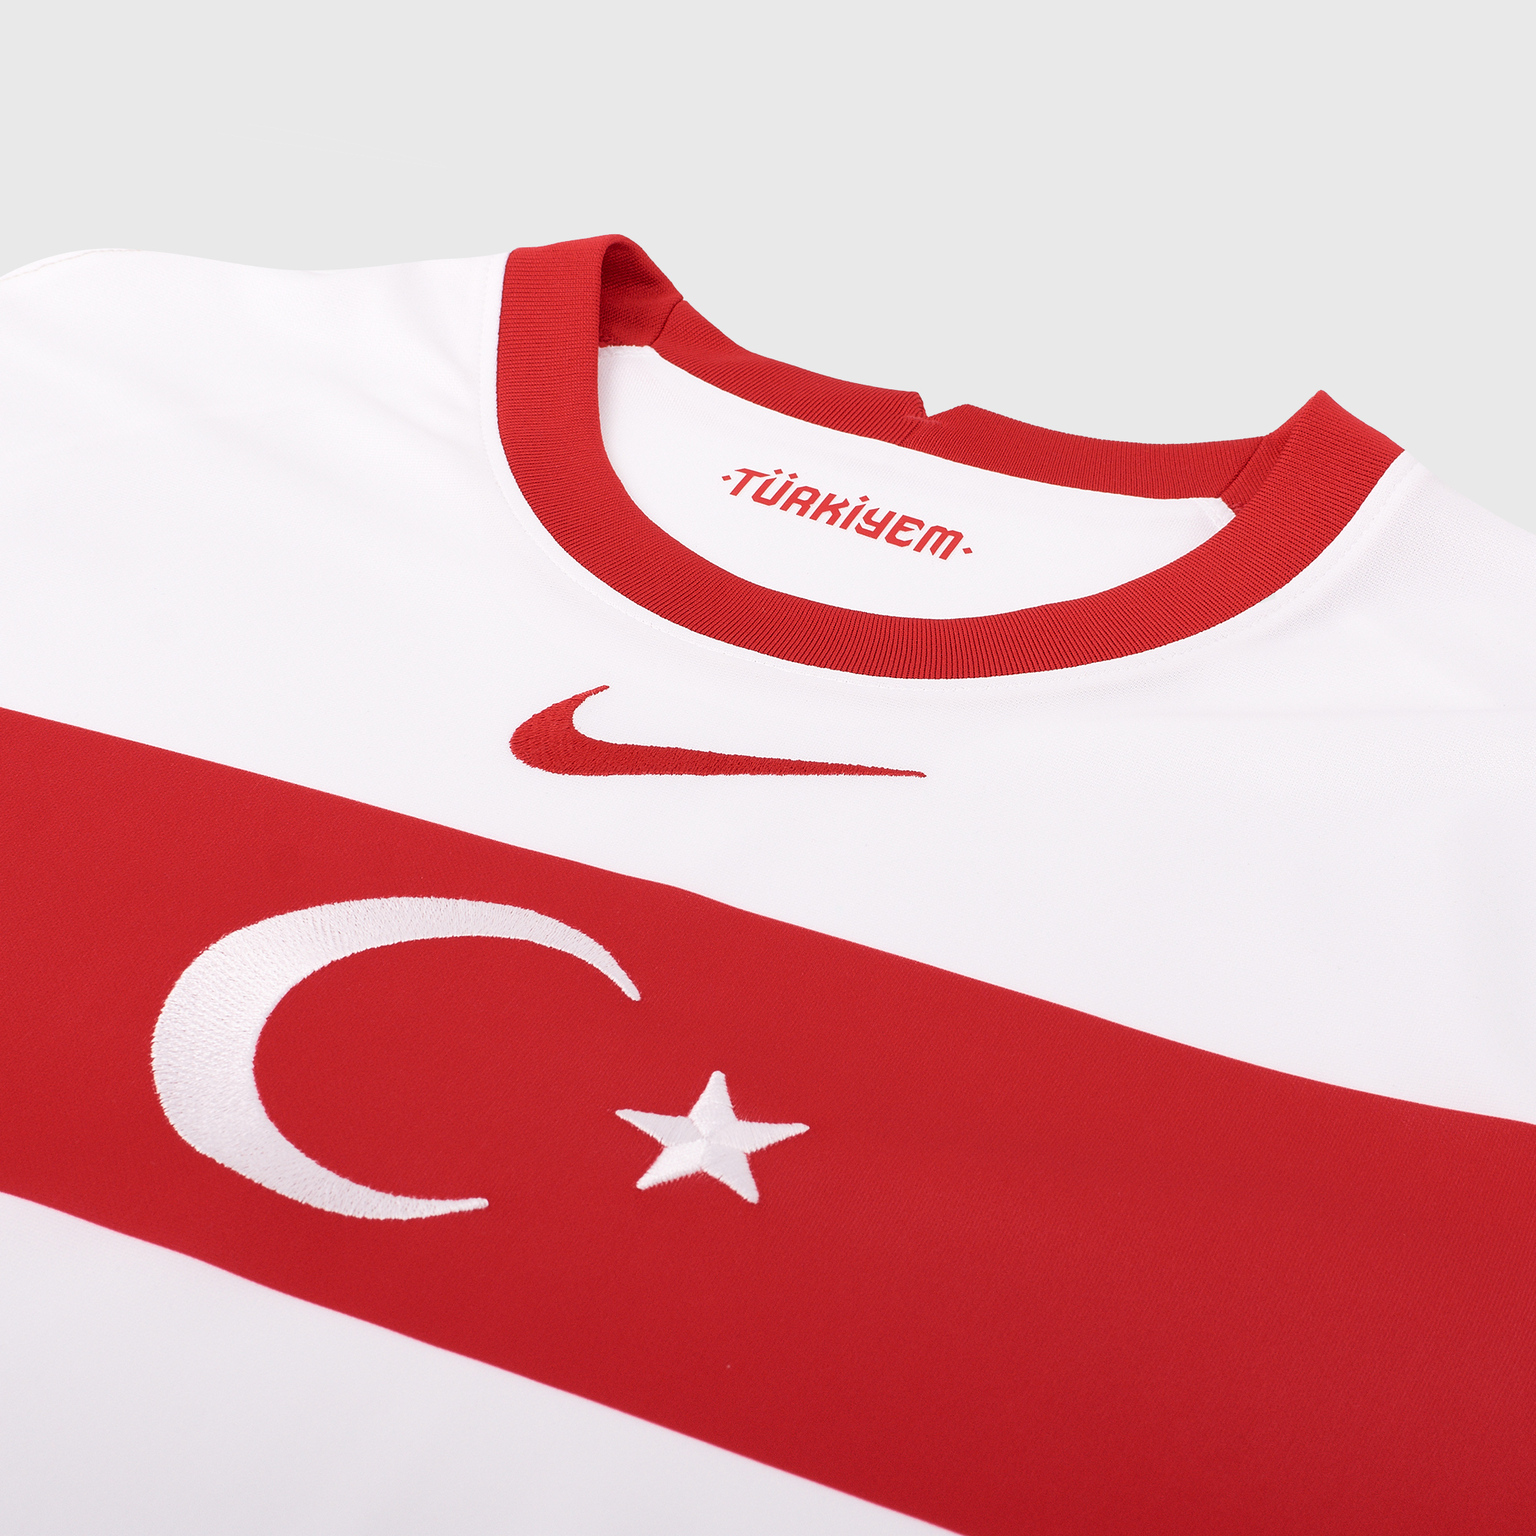 Футболка игровая домашняя Nike сборной Турции сезон 2020/21